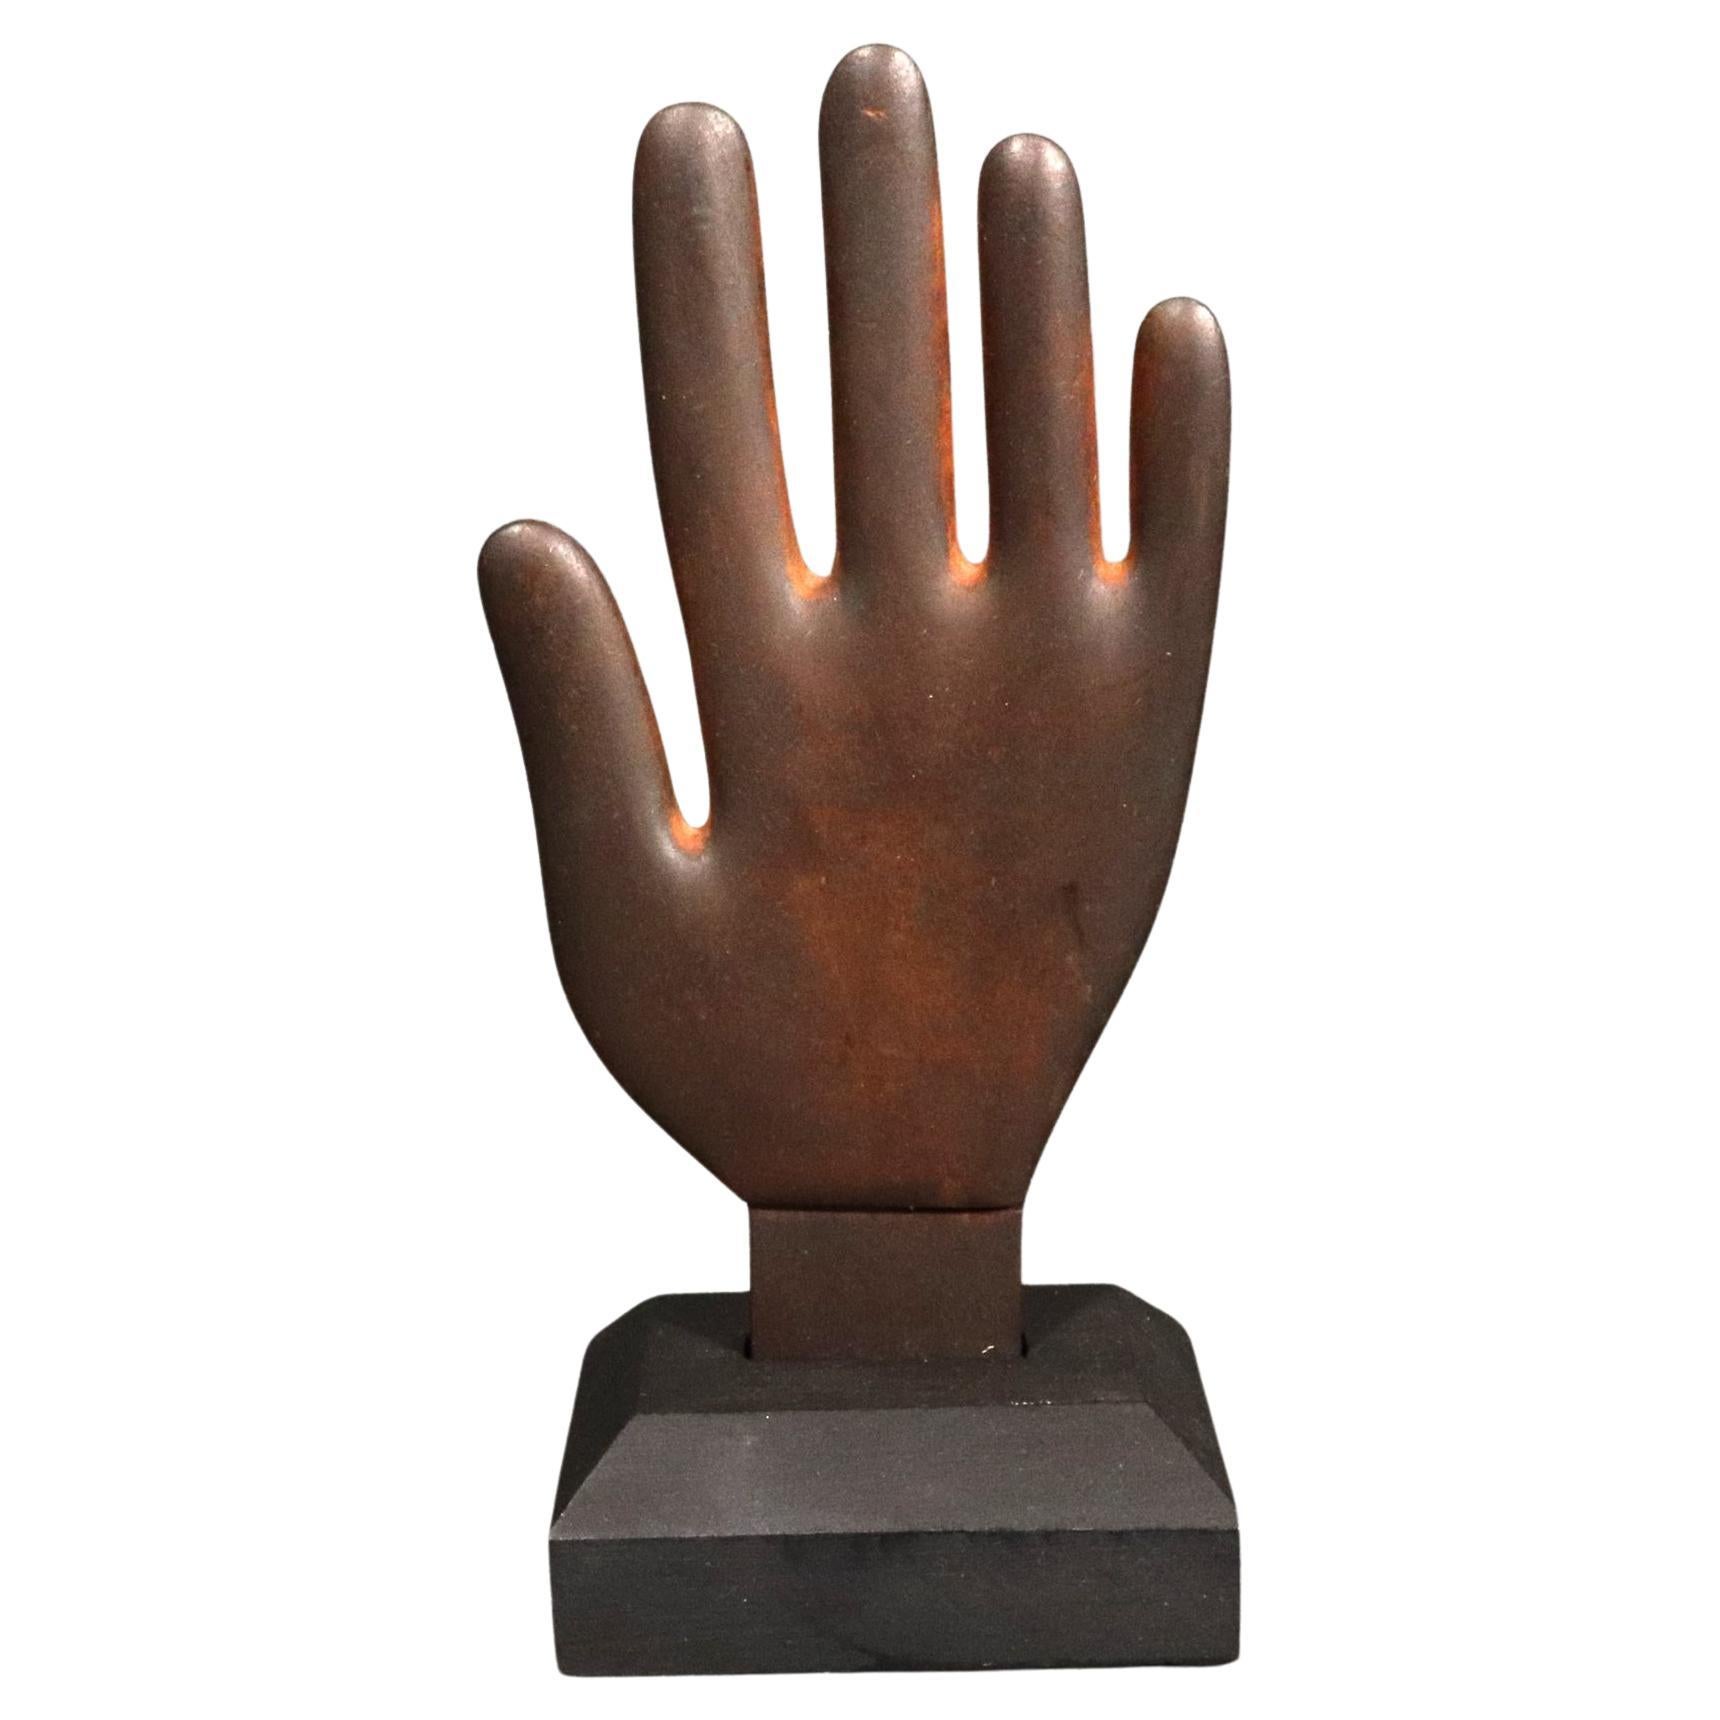 19th Century Folk Art Wooden Hand Glove Stretcher